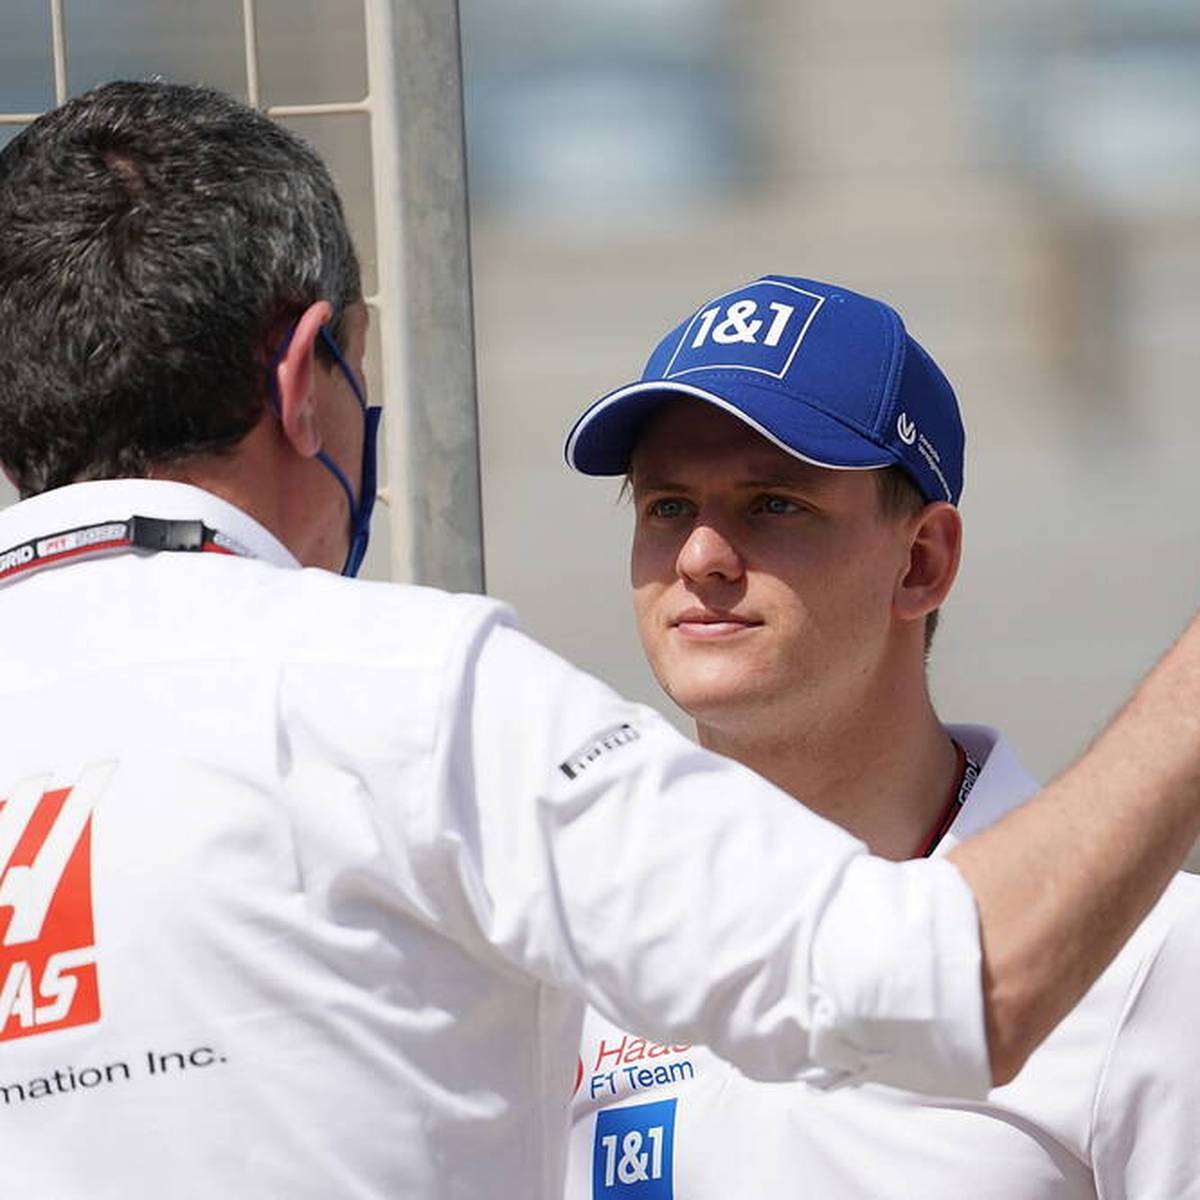 Der Vertrag von Mick Schumacher bei Haas läuft zum Saisonende aus. Nun spricht sein Teamchef Günther Steiner über die Zukunft des deutschen Fahrer.